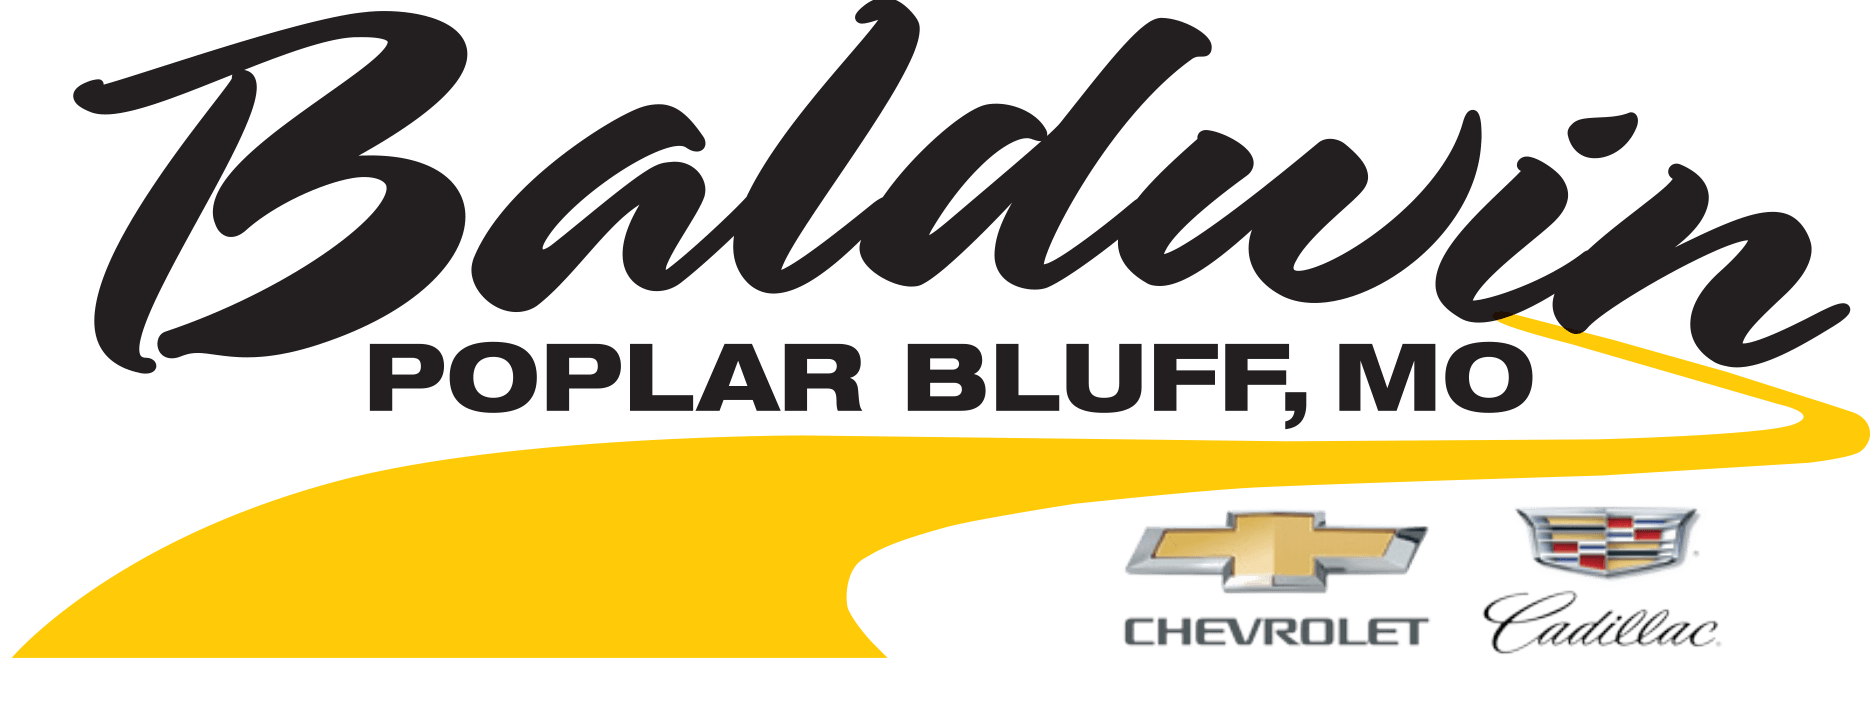 Baldwin Chevrolet 500 Sponsor